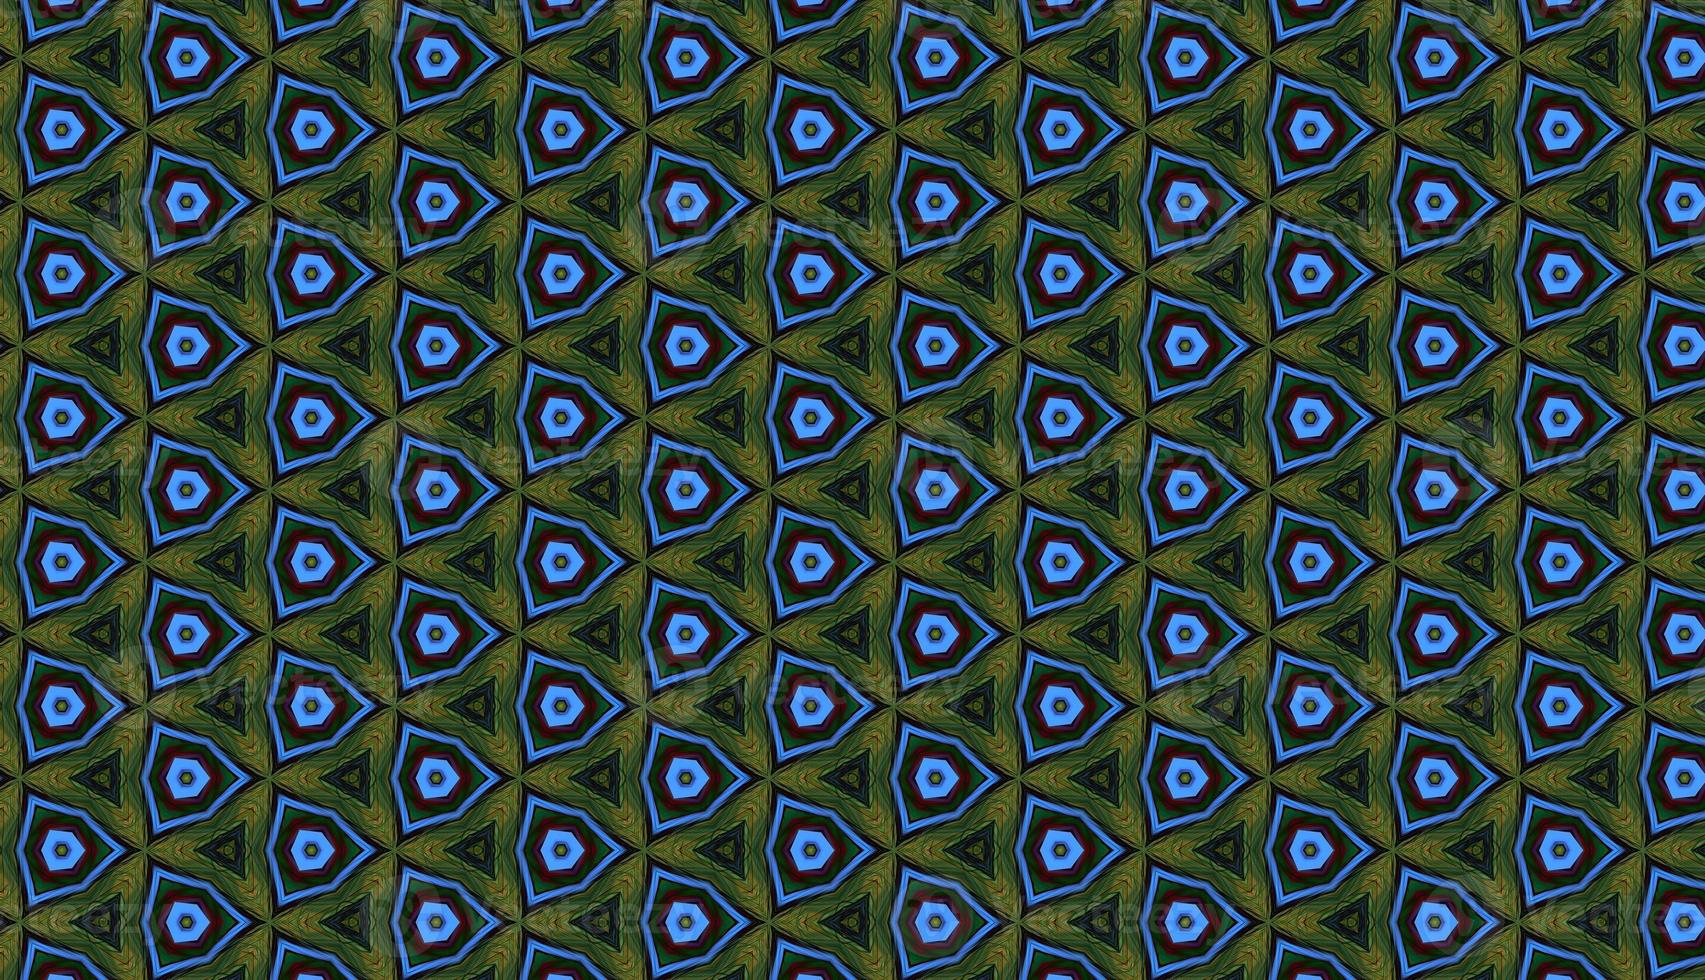 patrón ondulado floral transparente abstracto, fondo, textura. ilustración de alta calidad foto